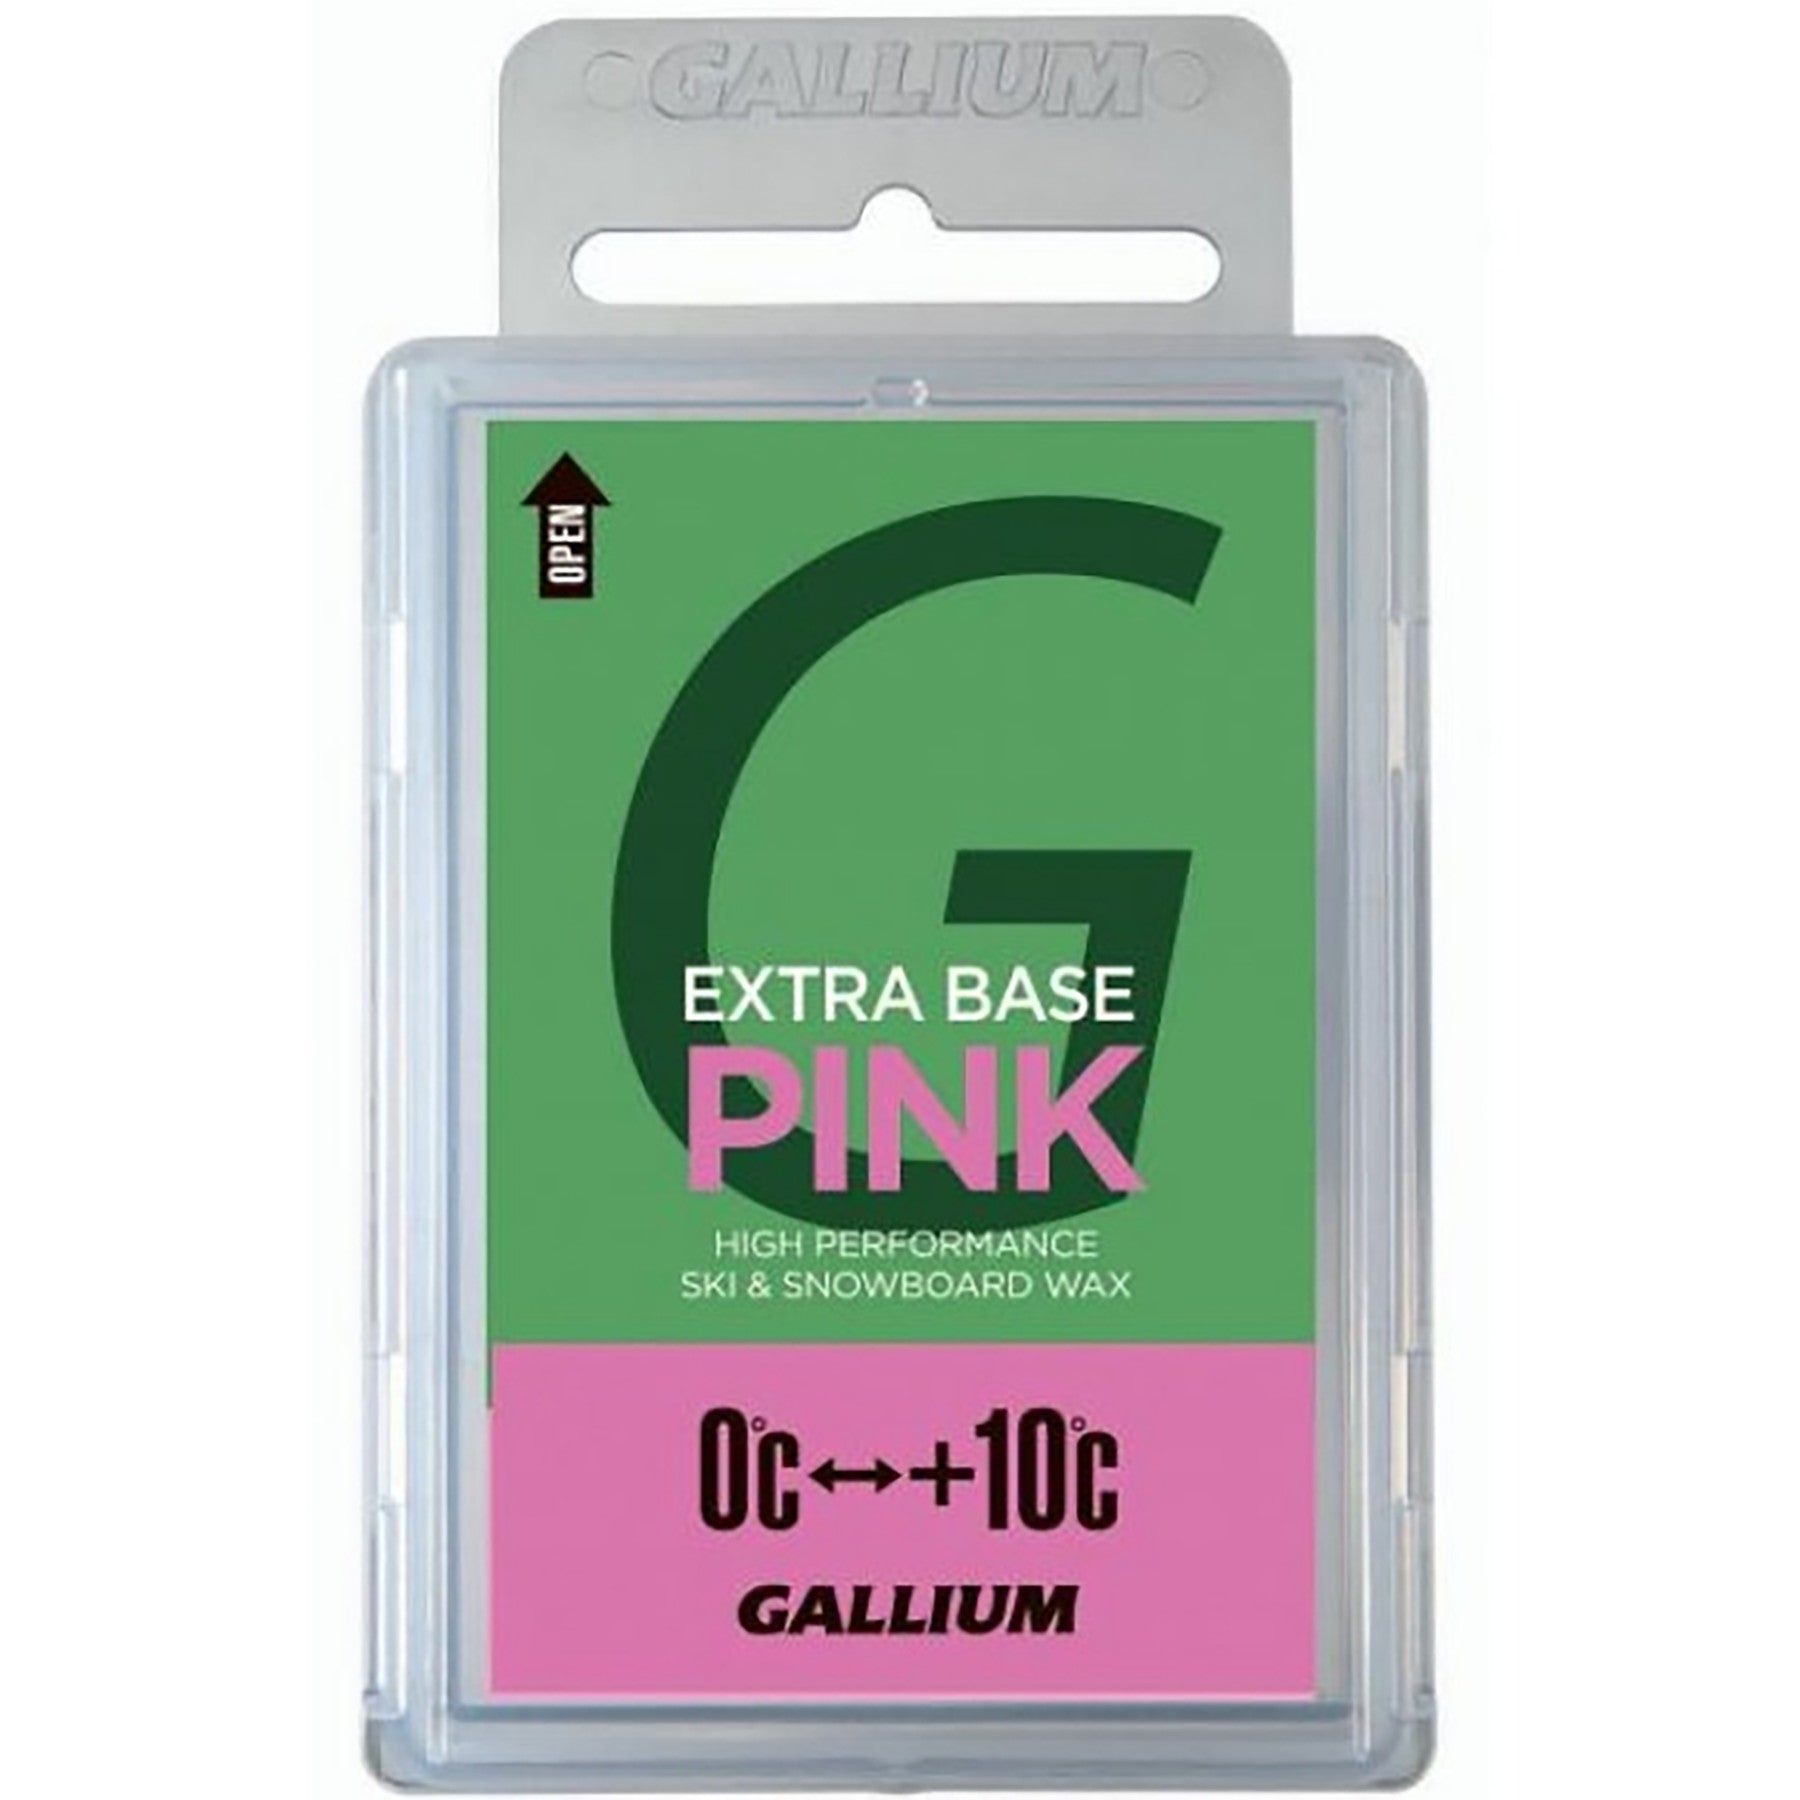 Gallium PINK Glide Wax 100g